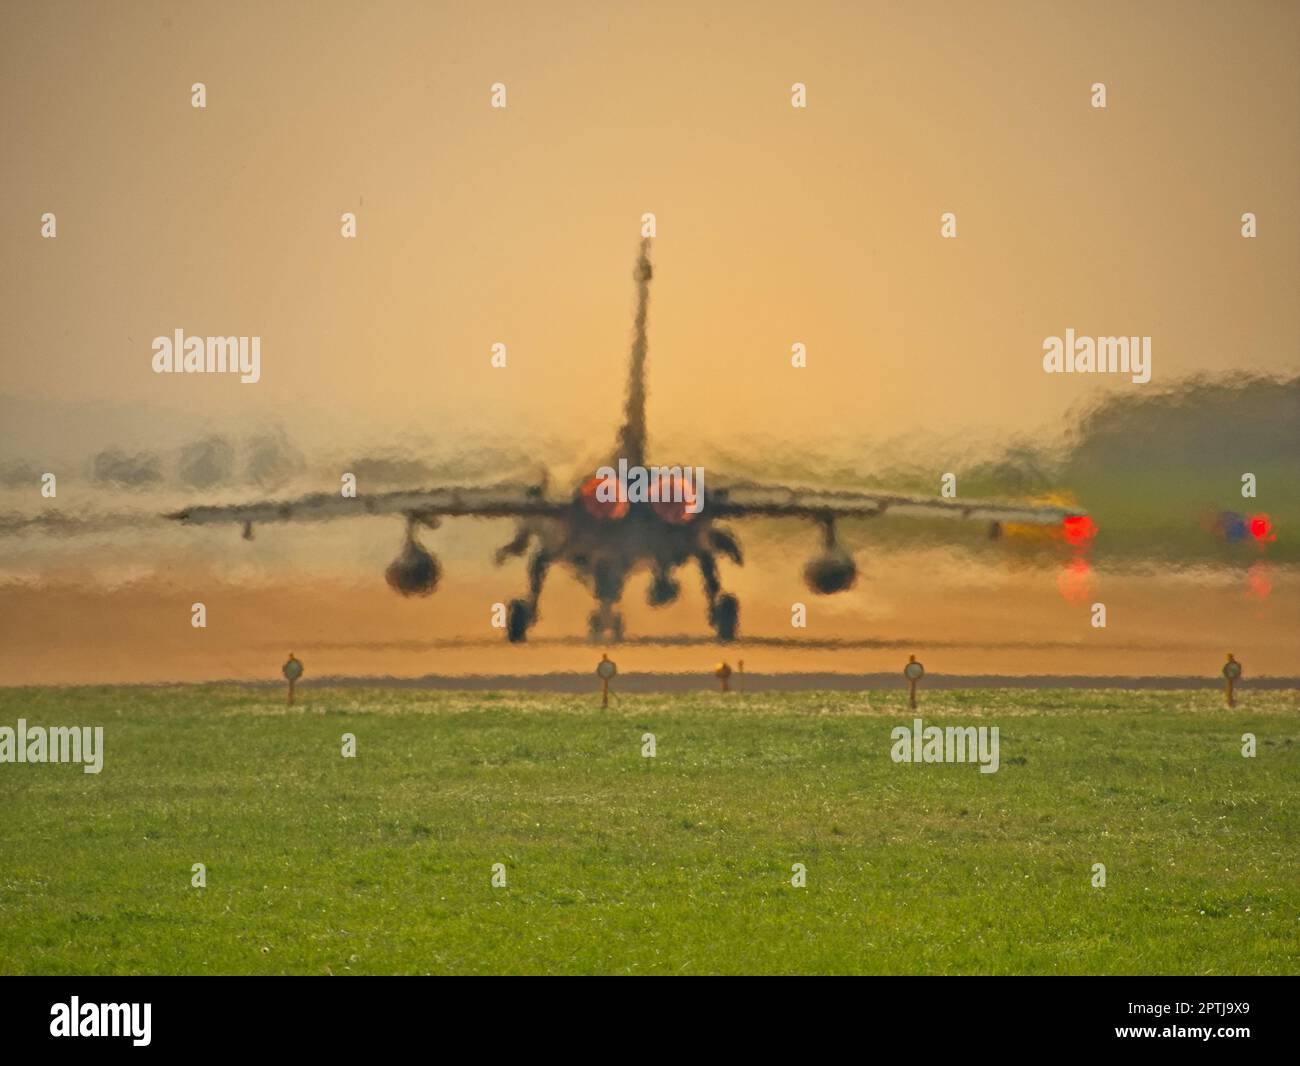 Tornado german air force air traffic Stock Photo